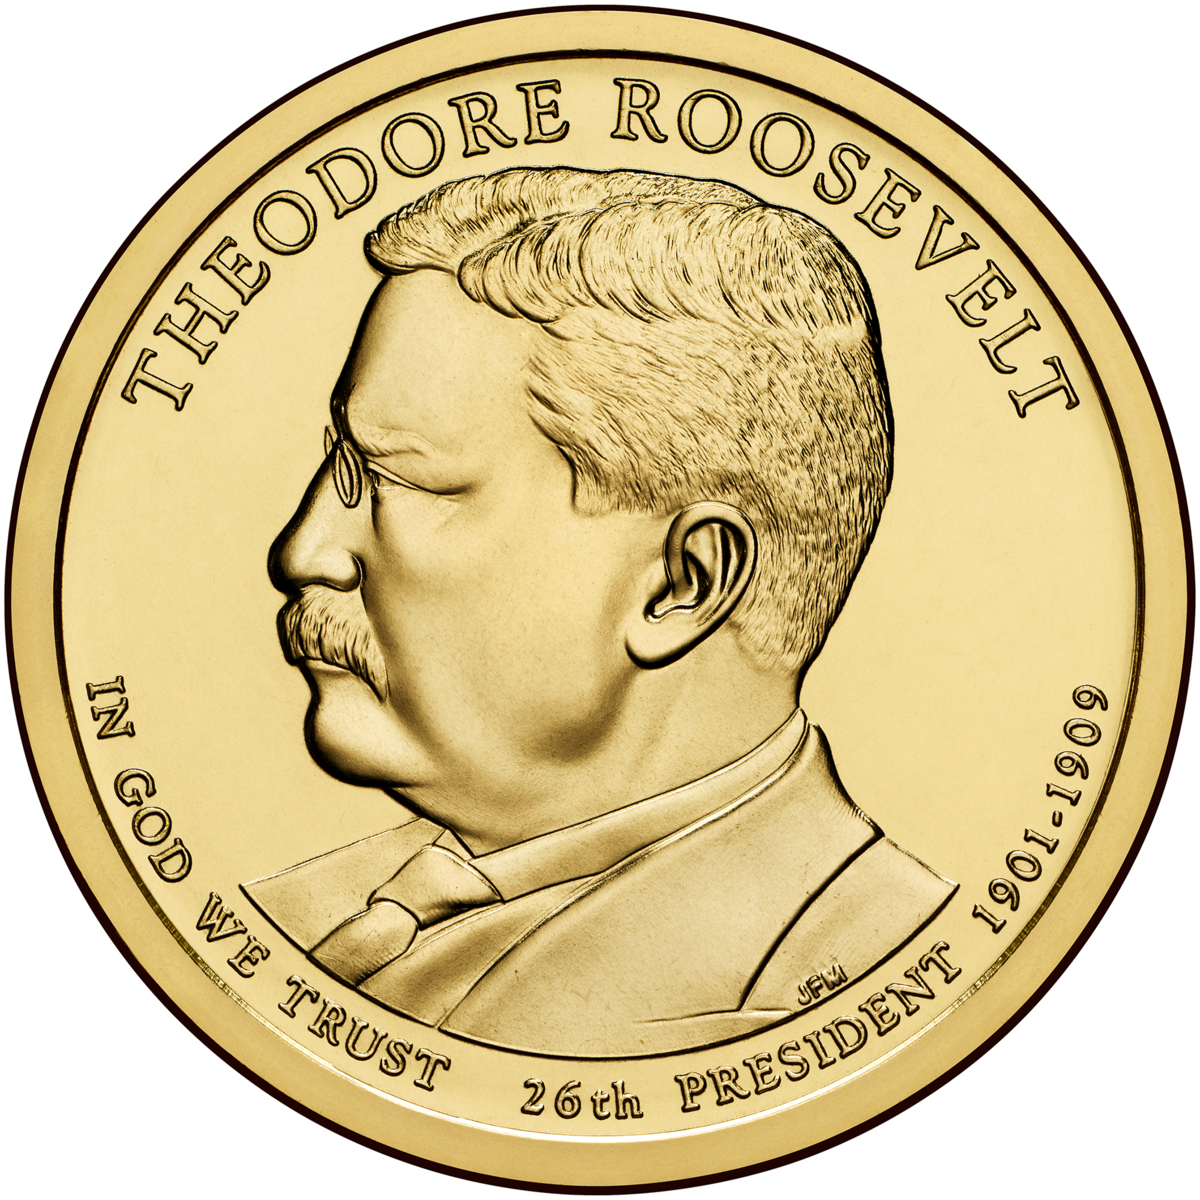 Khá trớ trêu khi Tổng thống Theodore Roosevelt được người ta tưởng nhớ bằng cách [khắc hình ông] trên đồng xu có khắc dòng chữ “Chúng ta tin vào Thượng Đế,” bởi vì vị cựu Tổng thống này từng lên tiếng phản đối việc đặt một “câu trang trọng” như vậy lên tiền xu. (Ảnh: Tư liệu công cộng)